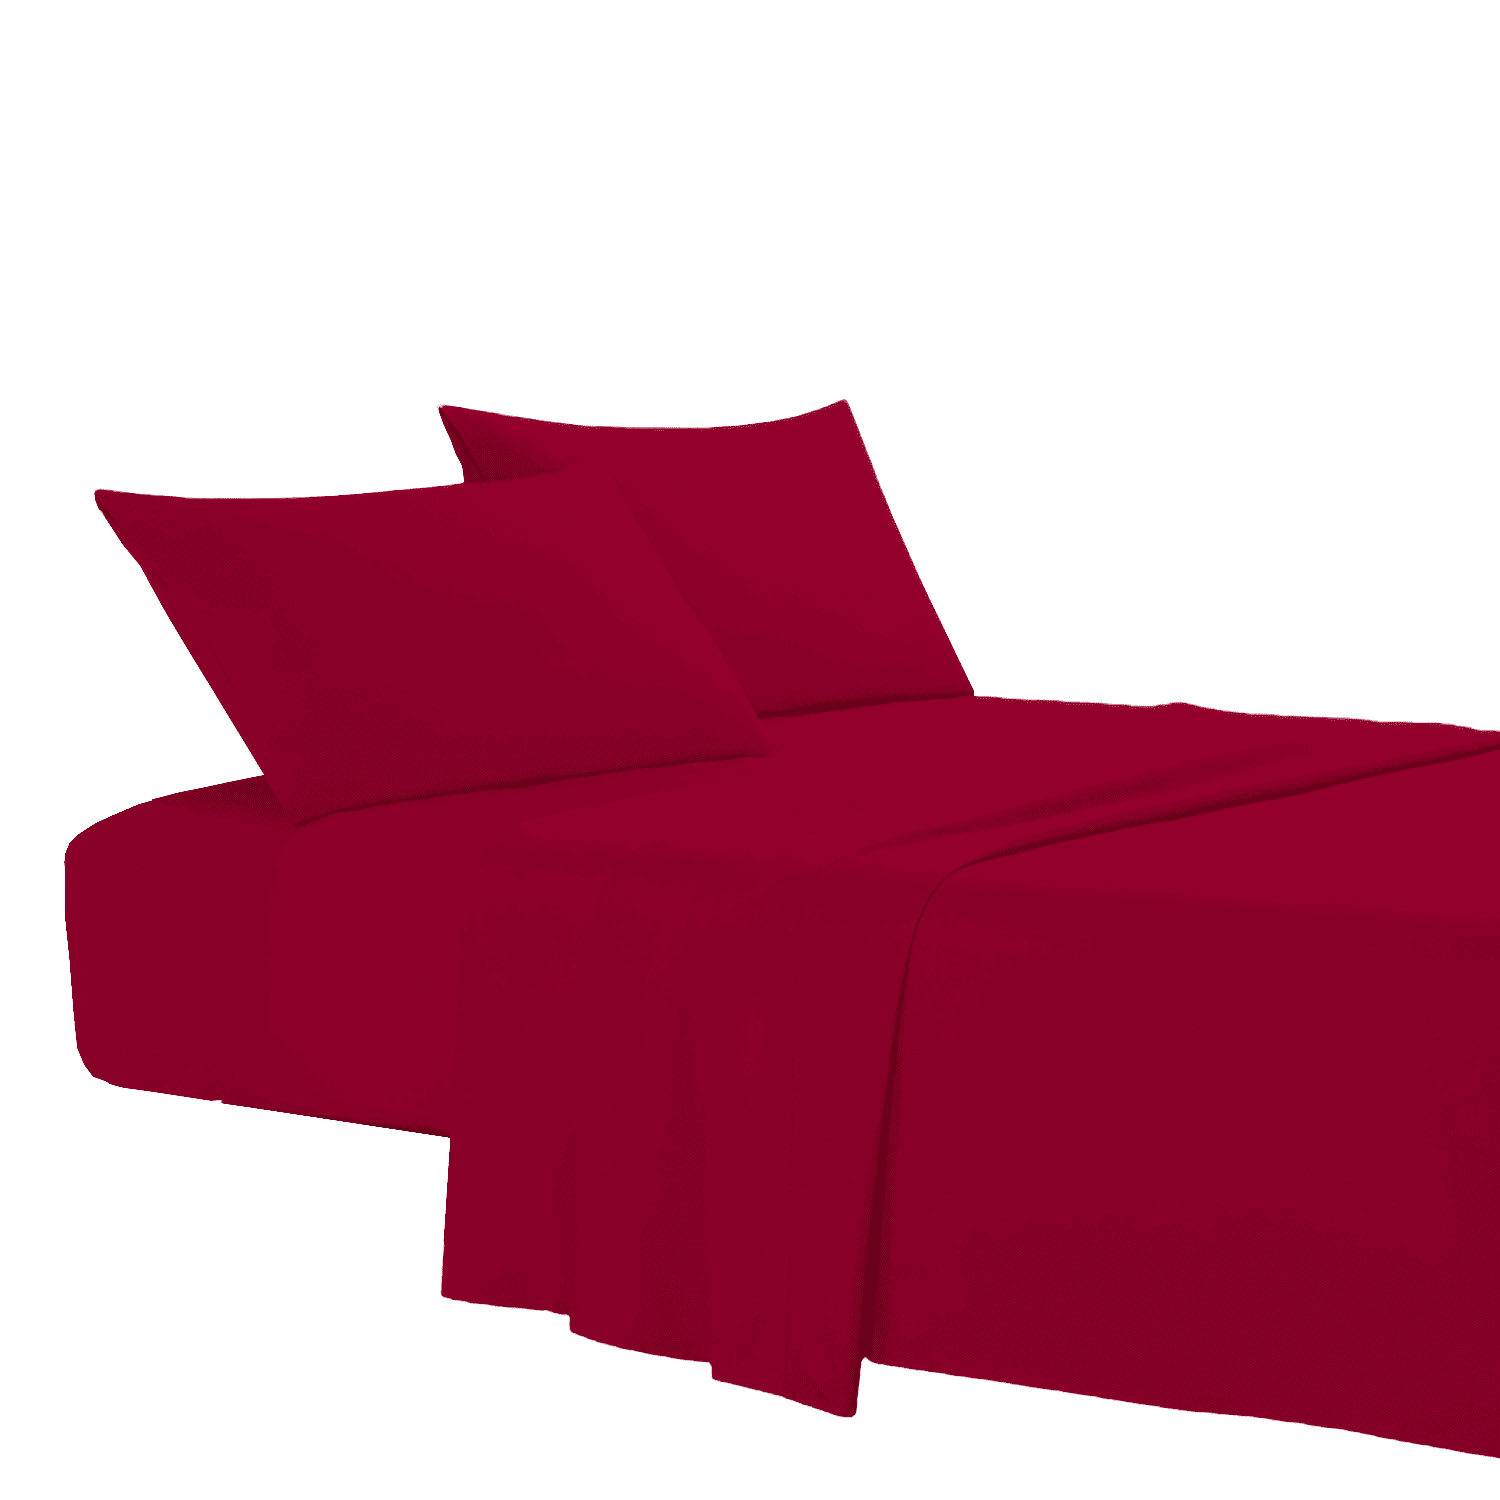 bordeaux-coloratissimi-completo-lenzuola-puro-cotone-tinta-unita-rosso-granata-fold-letto